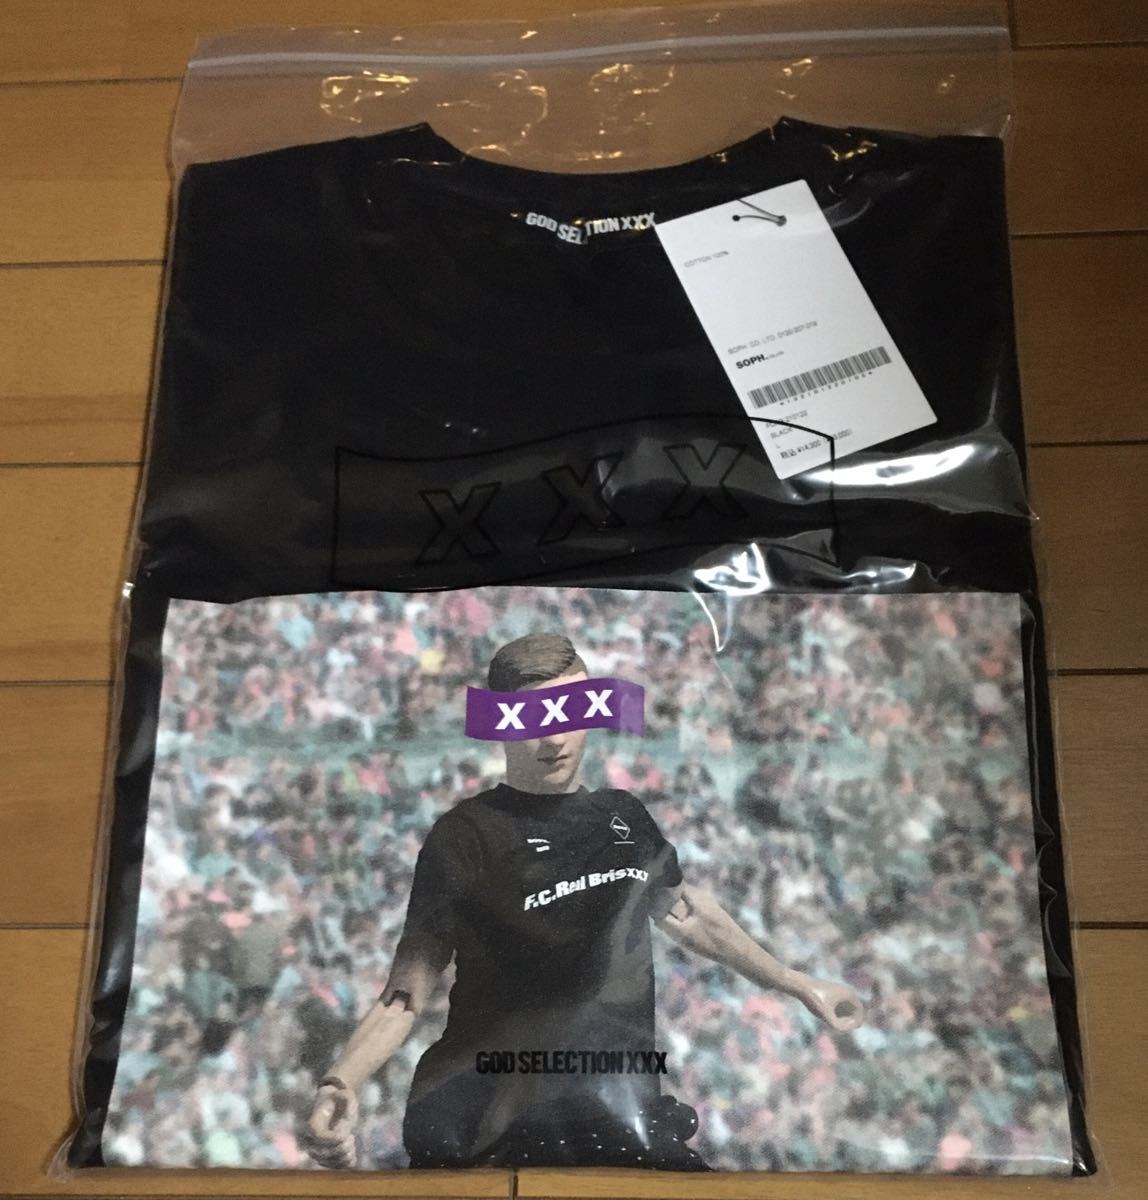 新品』GOD SELECTION XXX × F.C.Real Bristol☆Tシャツ Sサイズ 黒